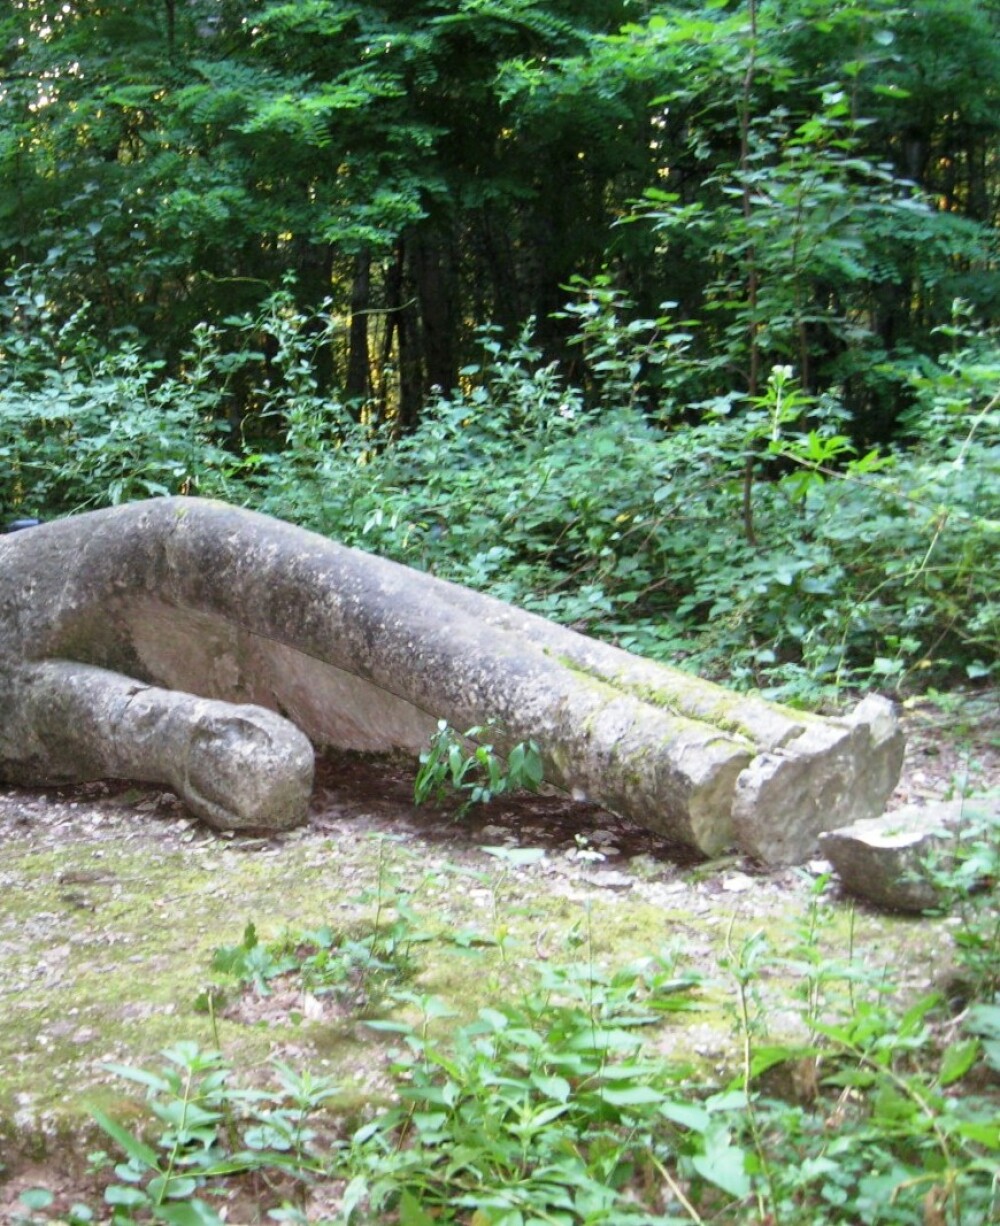 Parcul sculpturilor de la Casoaia va fi valorificat turistic, dupa ce a fost abandonat decenii - Imaginea 2